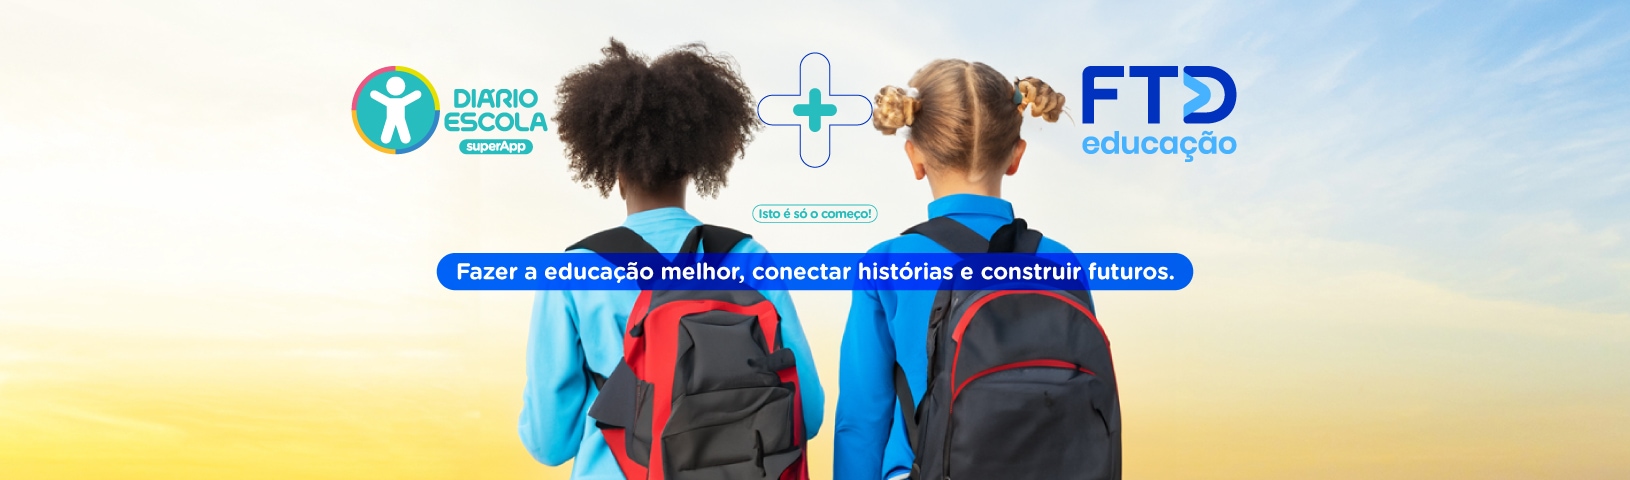 FTD Educação + superApp Diário Escola